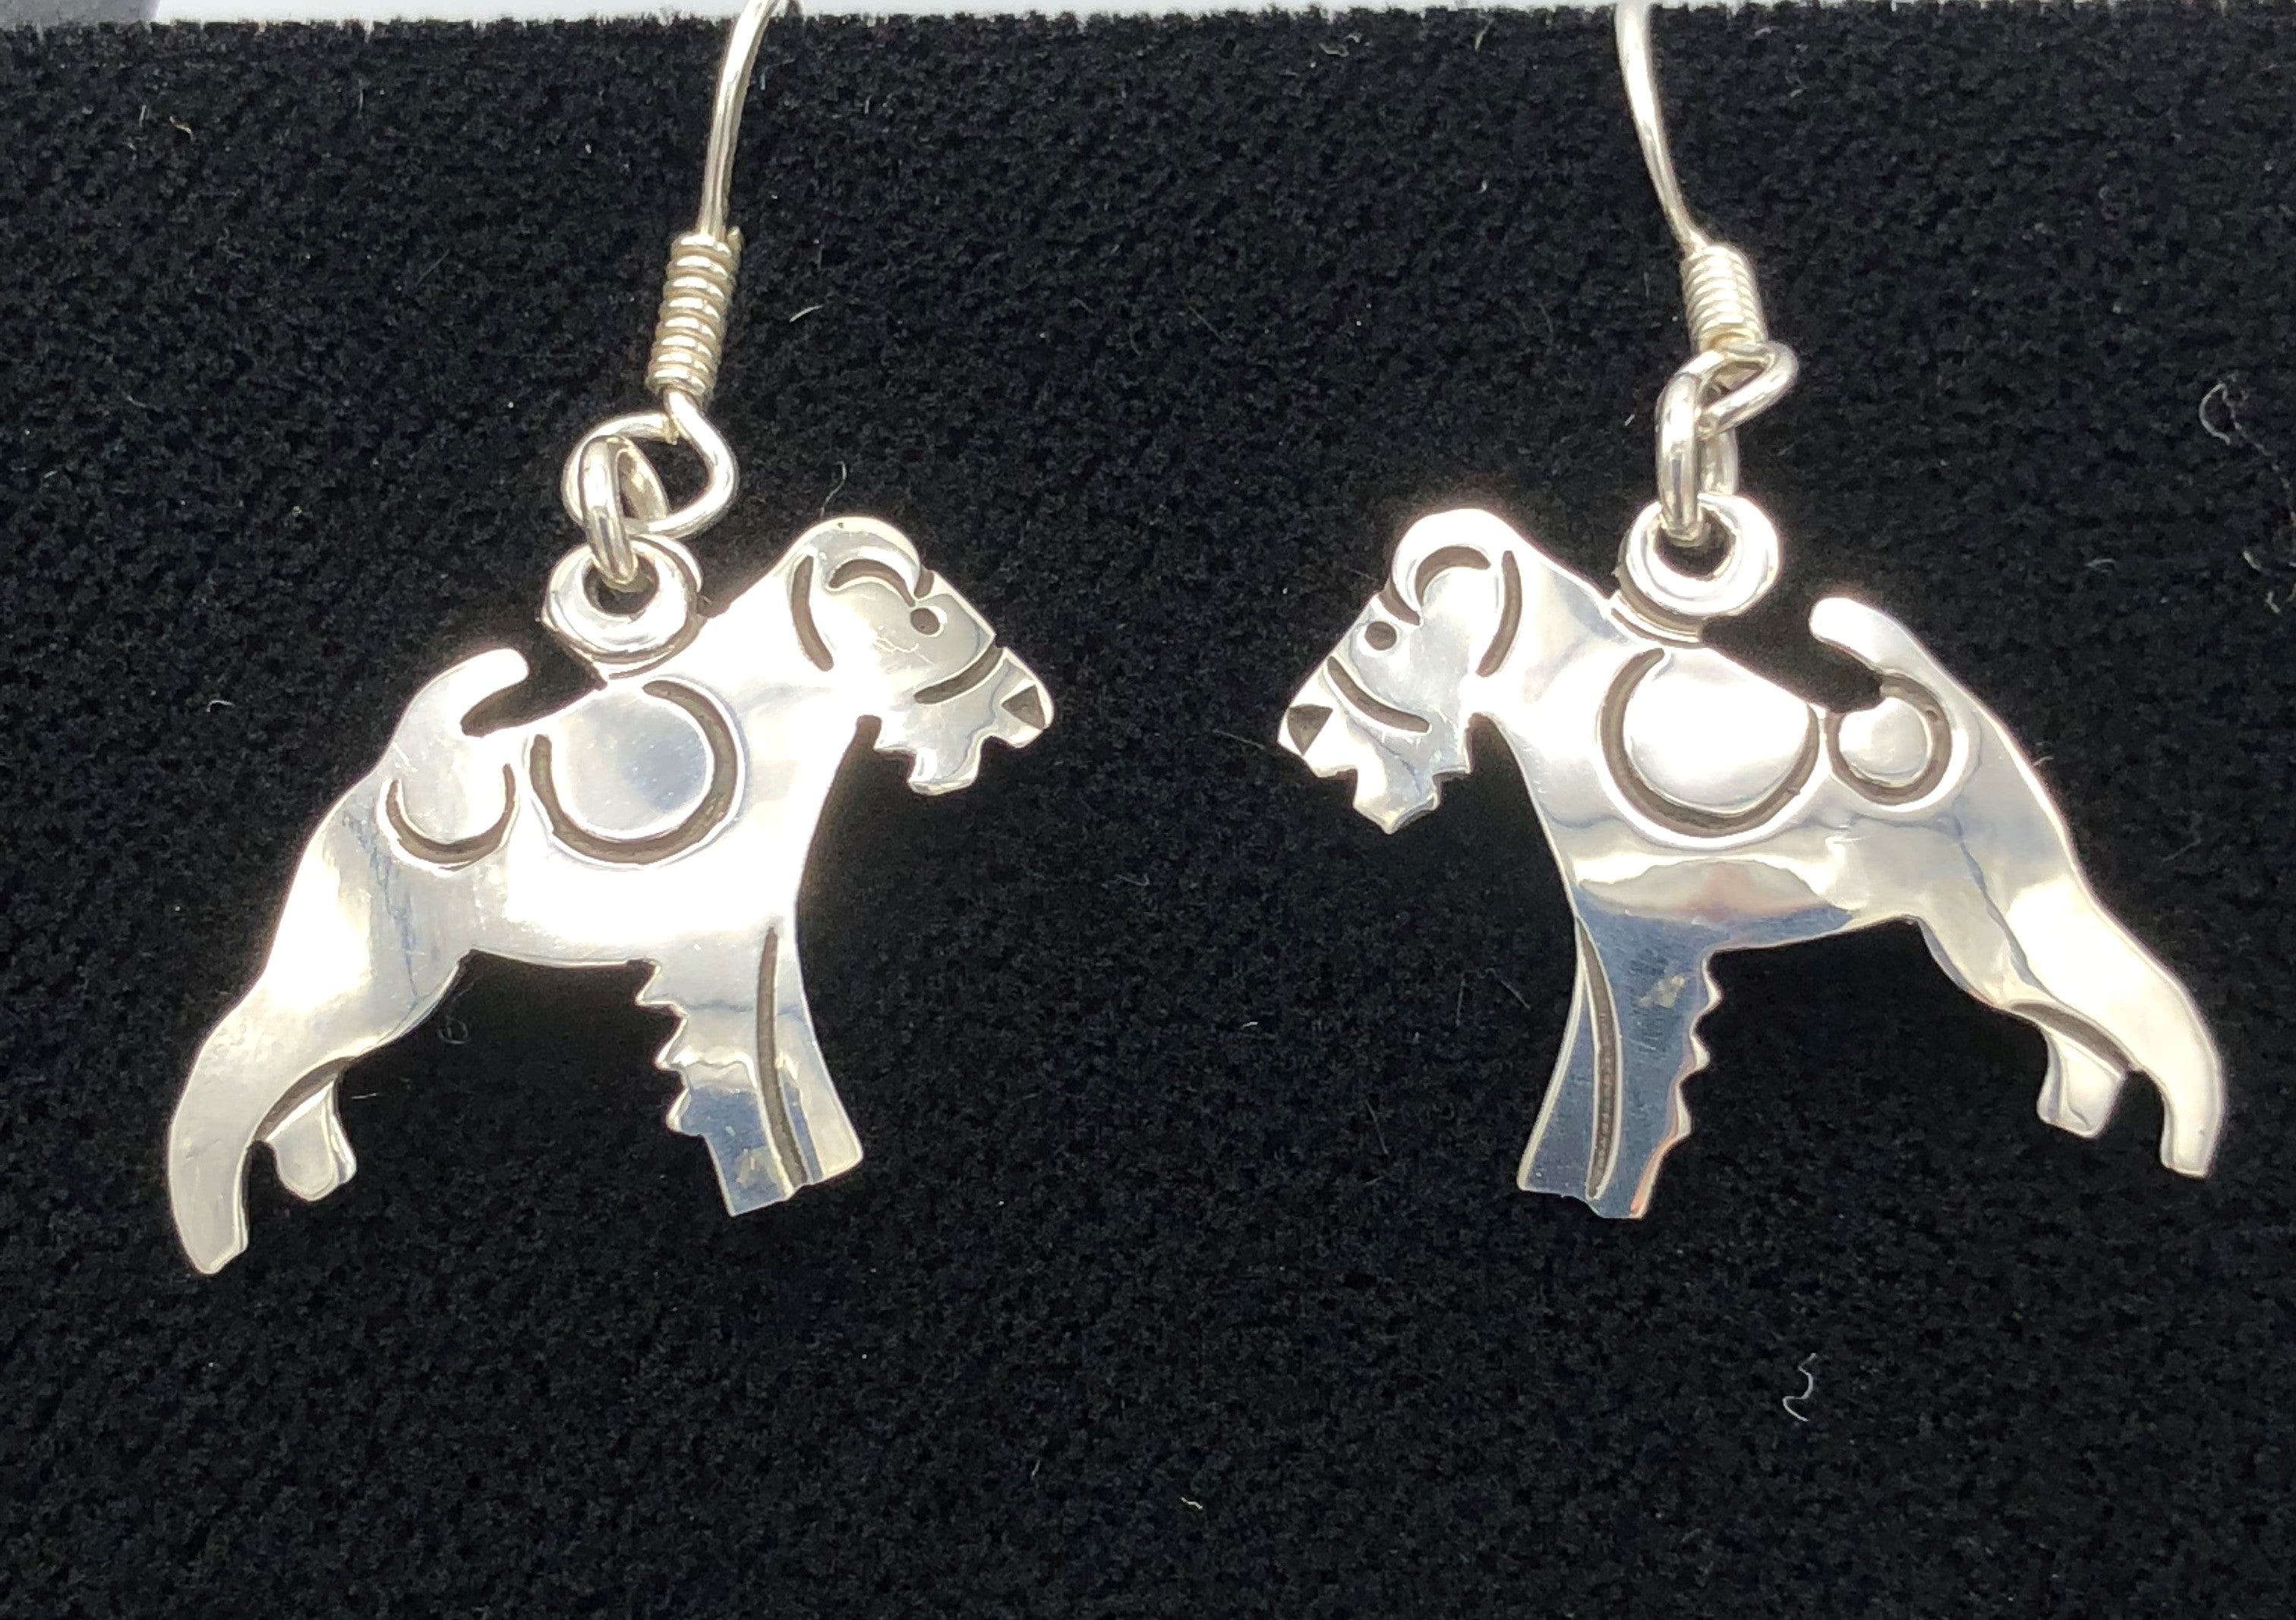 Terrier earrings in Sterling Silver